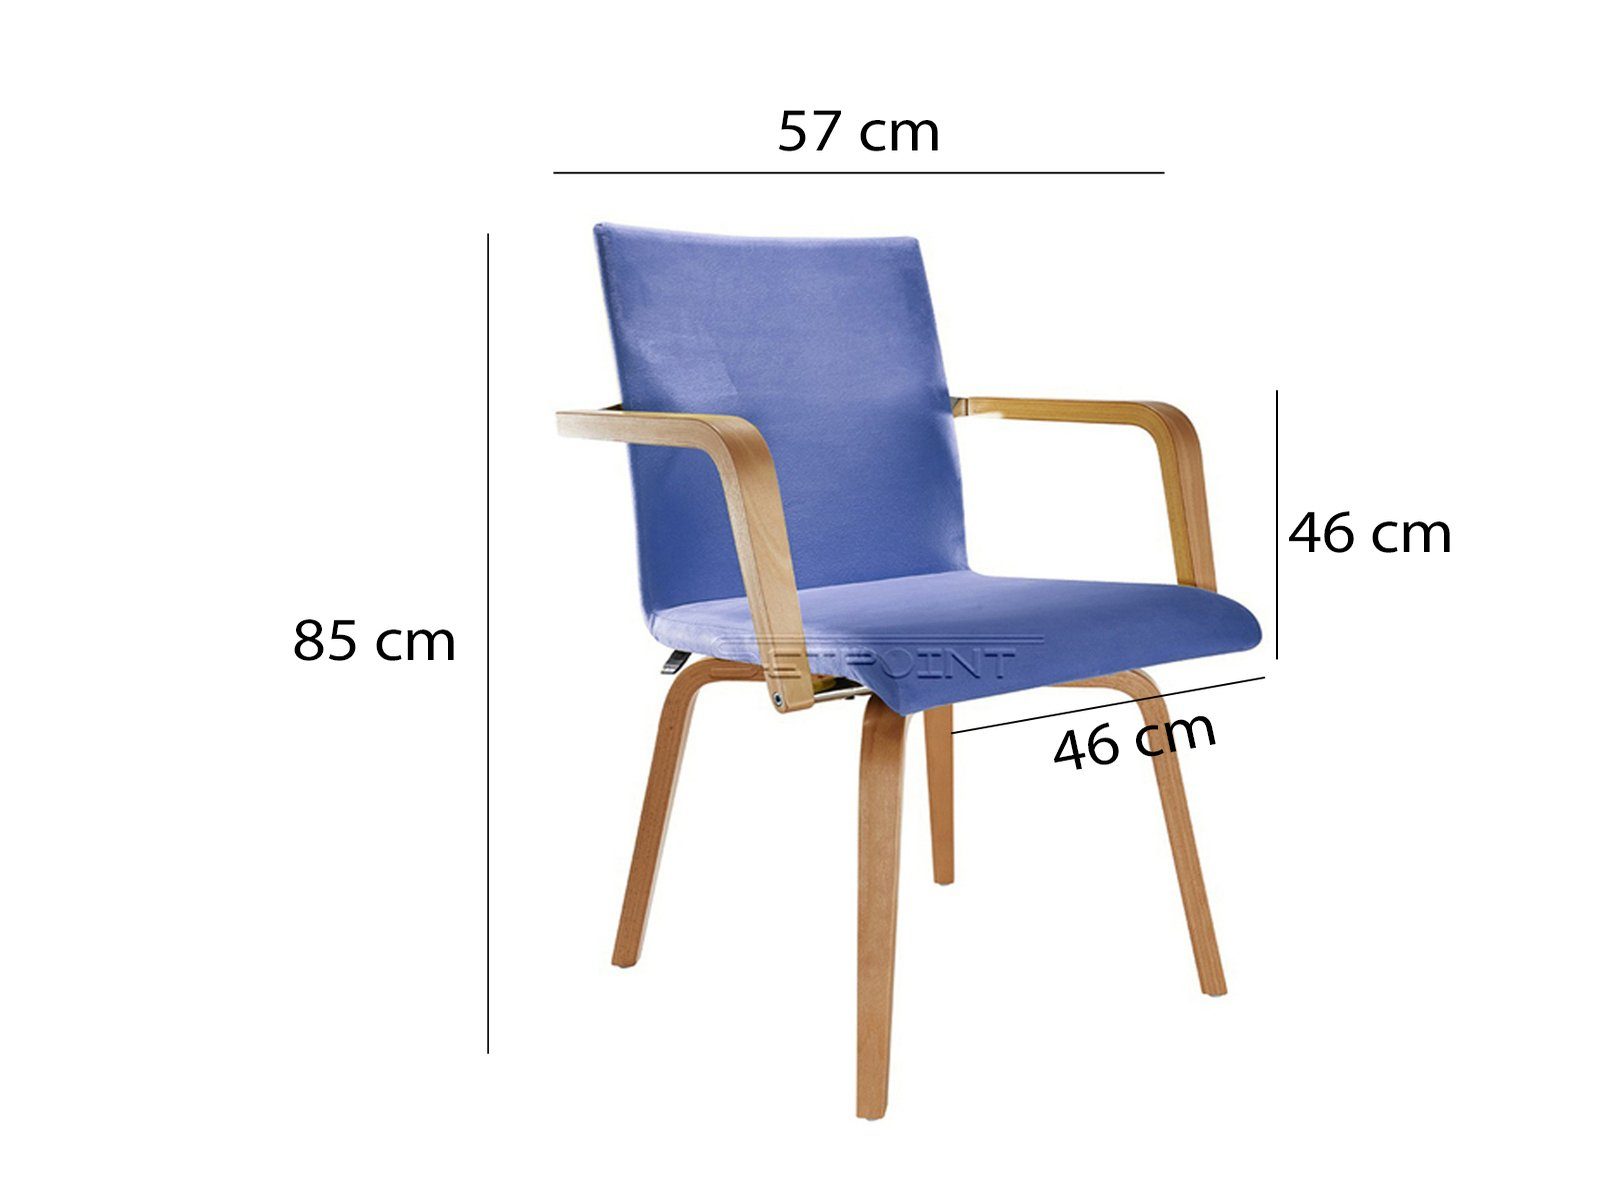 Senioren-stuhl Armlehnstuhl, Sitzkultur Stoff Mauser Armlehnen, Blau ergonomischer mit Besucherstuhl